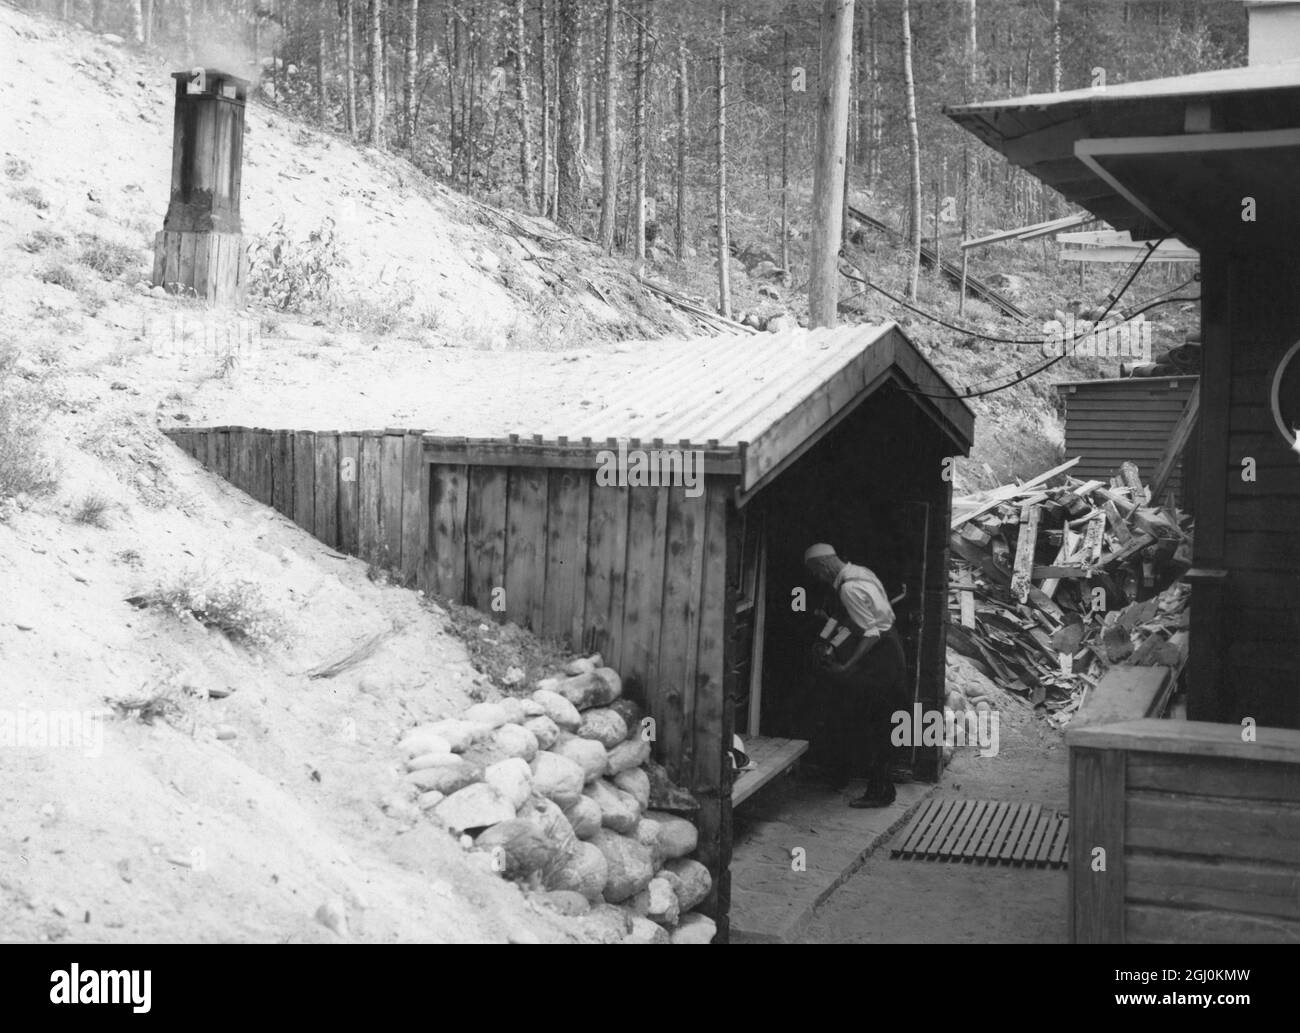 Le Bath House, en partie construit dans la pente de la colline, est une hutte de sauna typiquement finnoise à l'ancienne. Il est construit de bois; la fumée et la vapeur tout au long des années l'ont obscurci. En hiver, la neige profonde couvre le sol tout autour, et les baigneurs, au lieu de plonger dans le lac - qui est gelé - roulent dans la neige. Finlande - années 1930 Banque D'Images